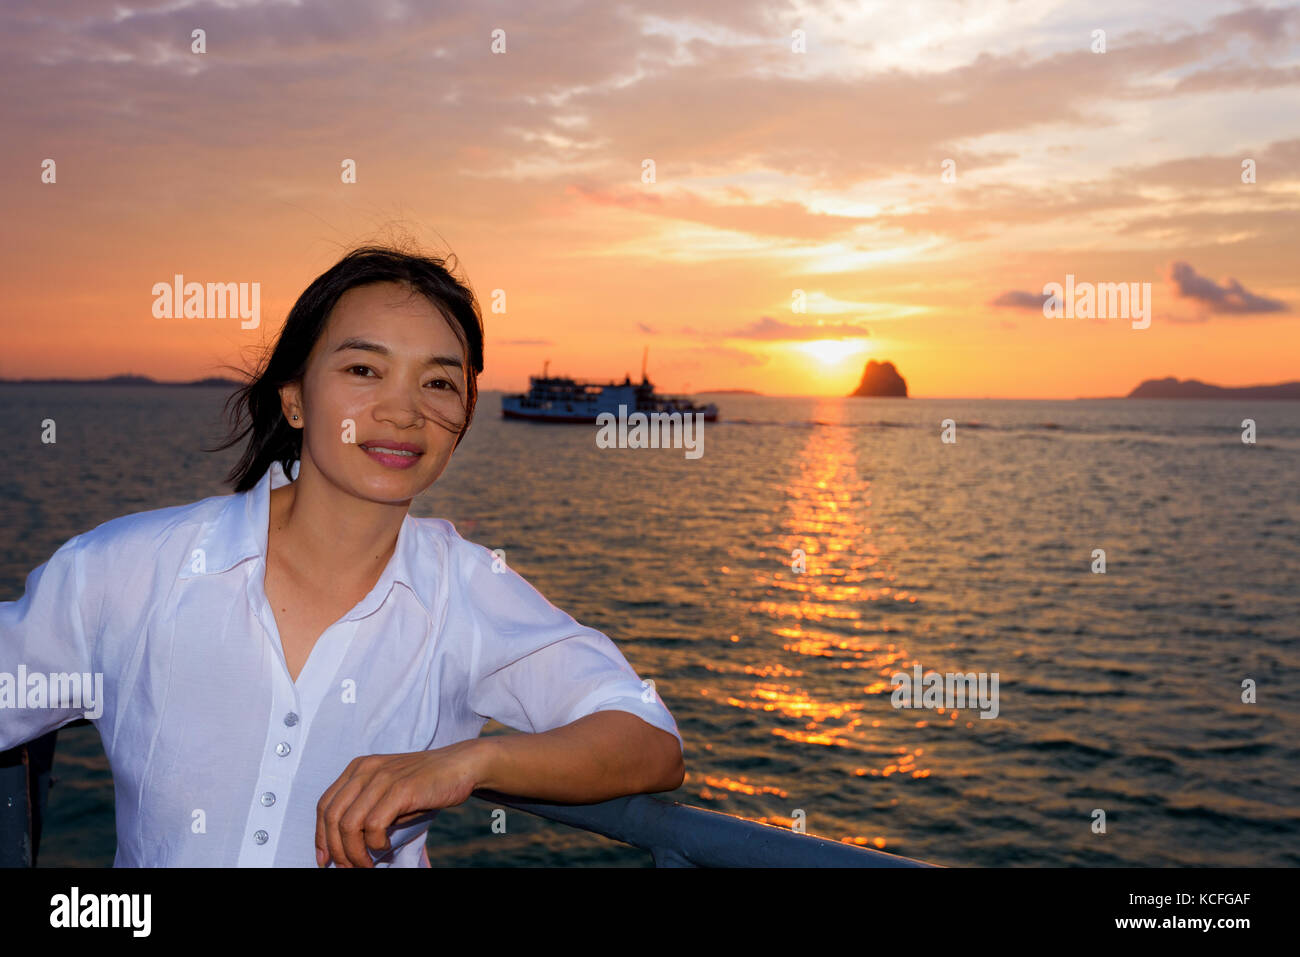 Wunderschöne Natur bunte Himmel und Sonne bei Sonnenuntergang über dem Meer, Frauen Touristen auf dem Deck eines großen Pkw Boot während der Fahrt nach Koh Samui Insel Stockfoto